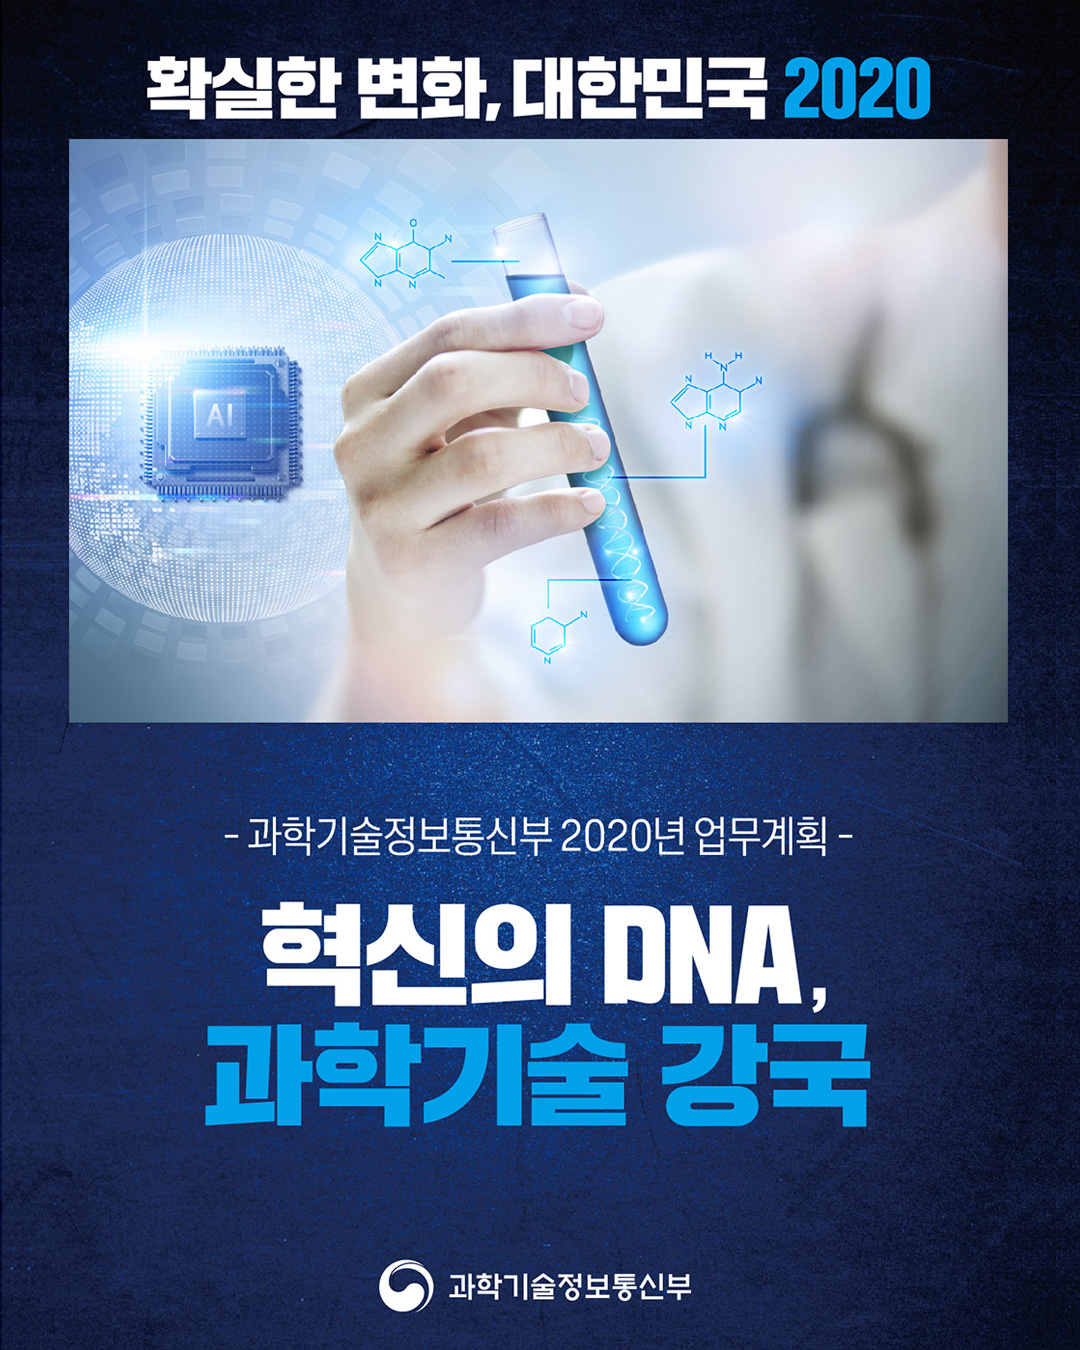 확실한 변화, 대한민국 2020 -과학기술정보통신부 2020년 업무계획- 혁신의 DNA, 과학기술 강국 과학기술정보통신부